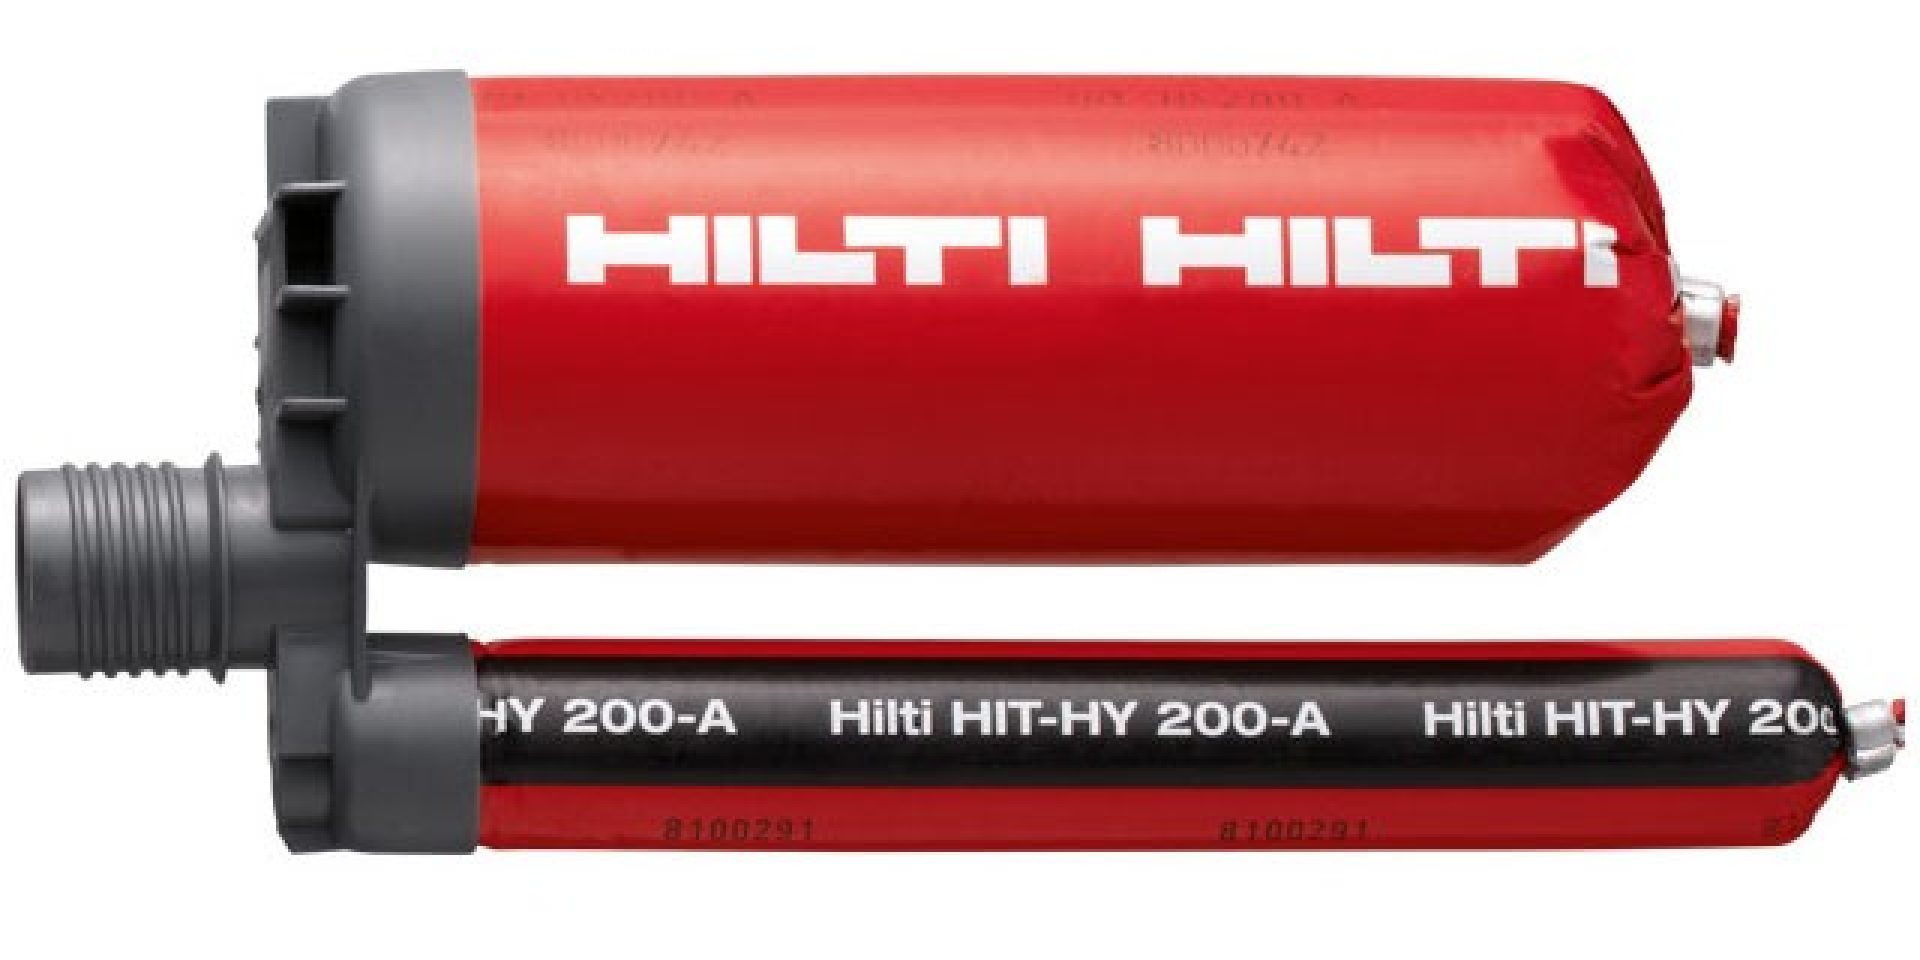 HIT-HY 200 er en ultimativt højtydende hybrid mørtel til krævende fastgørelses- og armeringsjernforbindelser som en del af Hilti SafeSet systemet